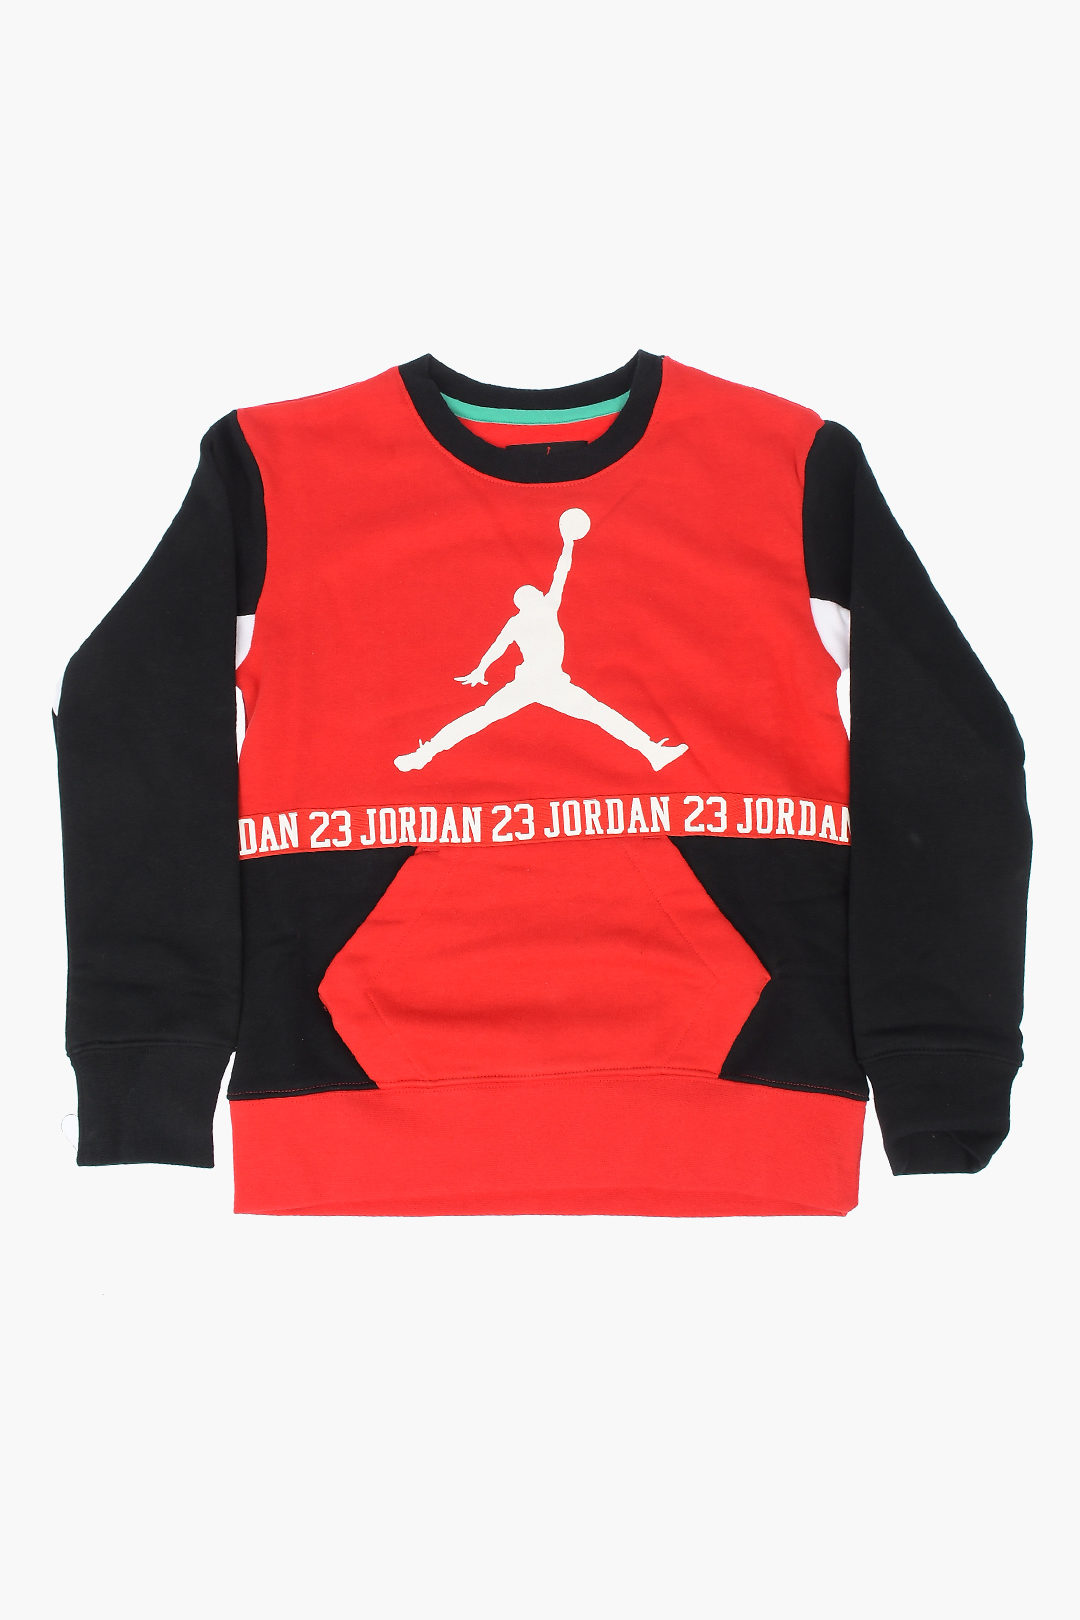 Nike KIDS AIR JORDAN Frontal Logo Bum Bag boys - Glamood Outlet